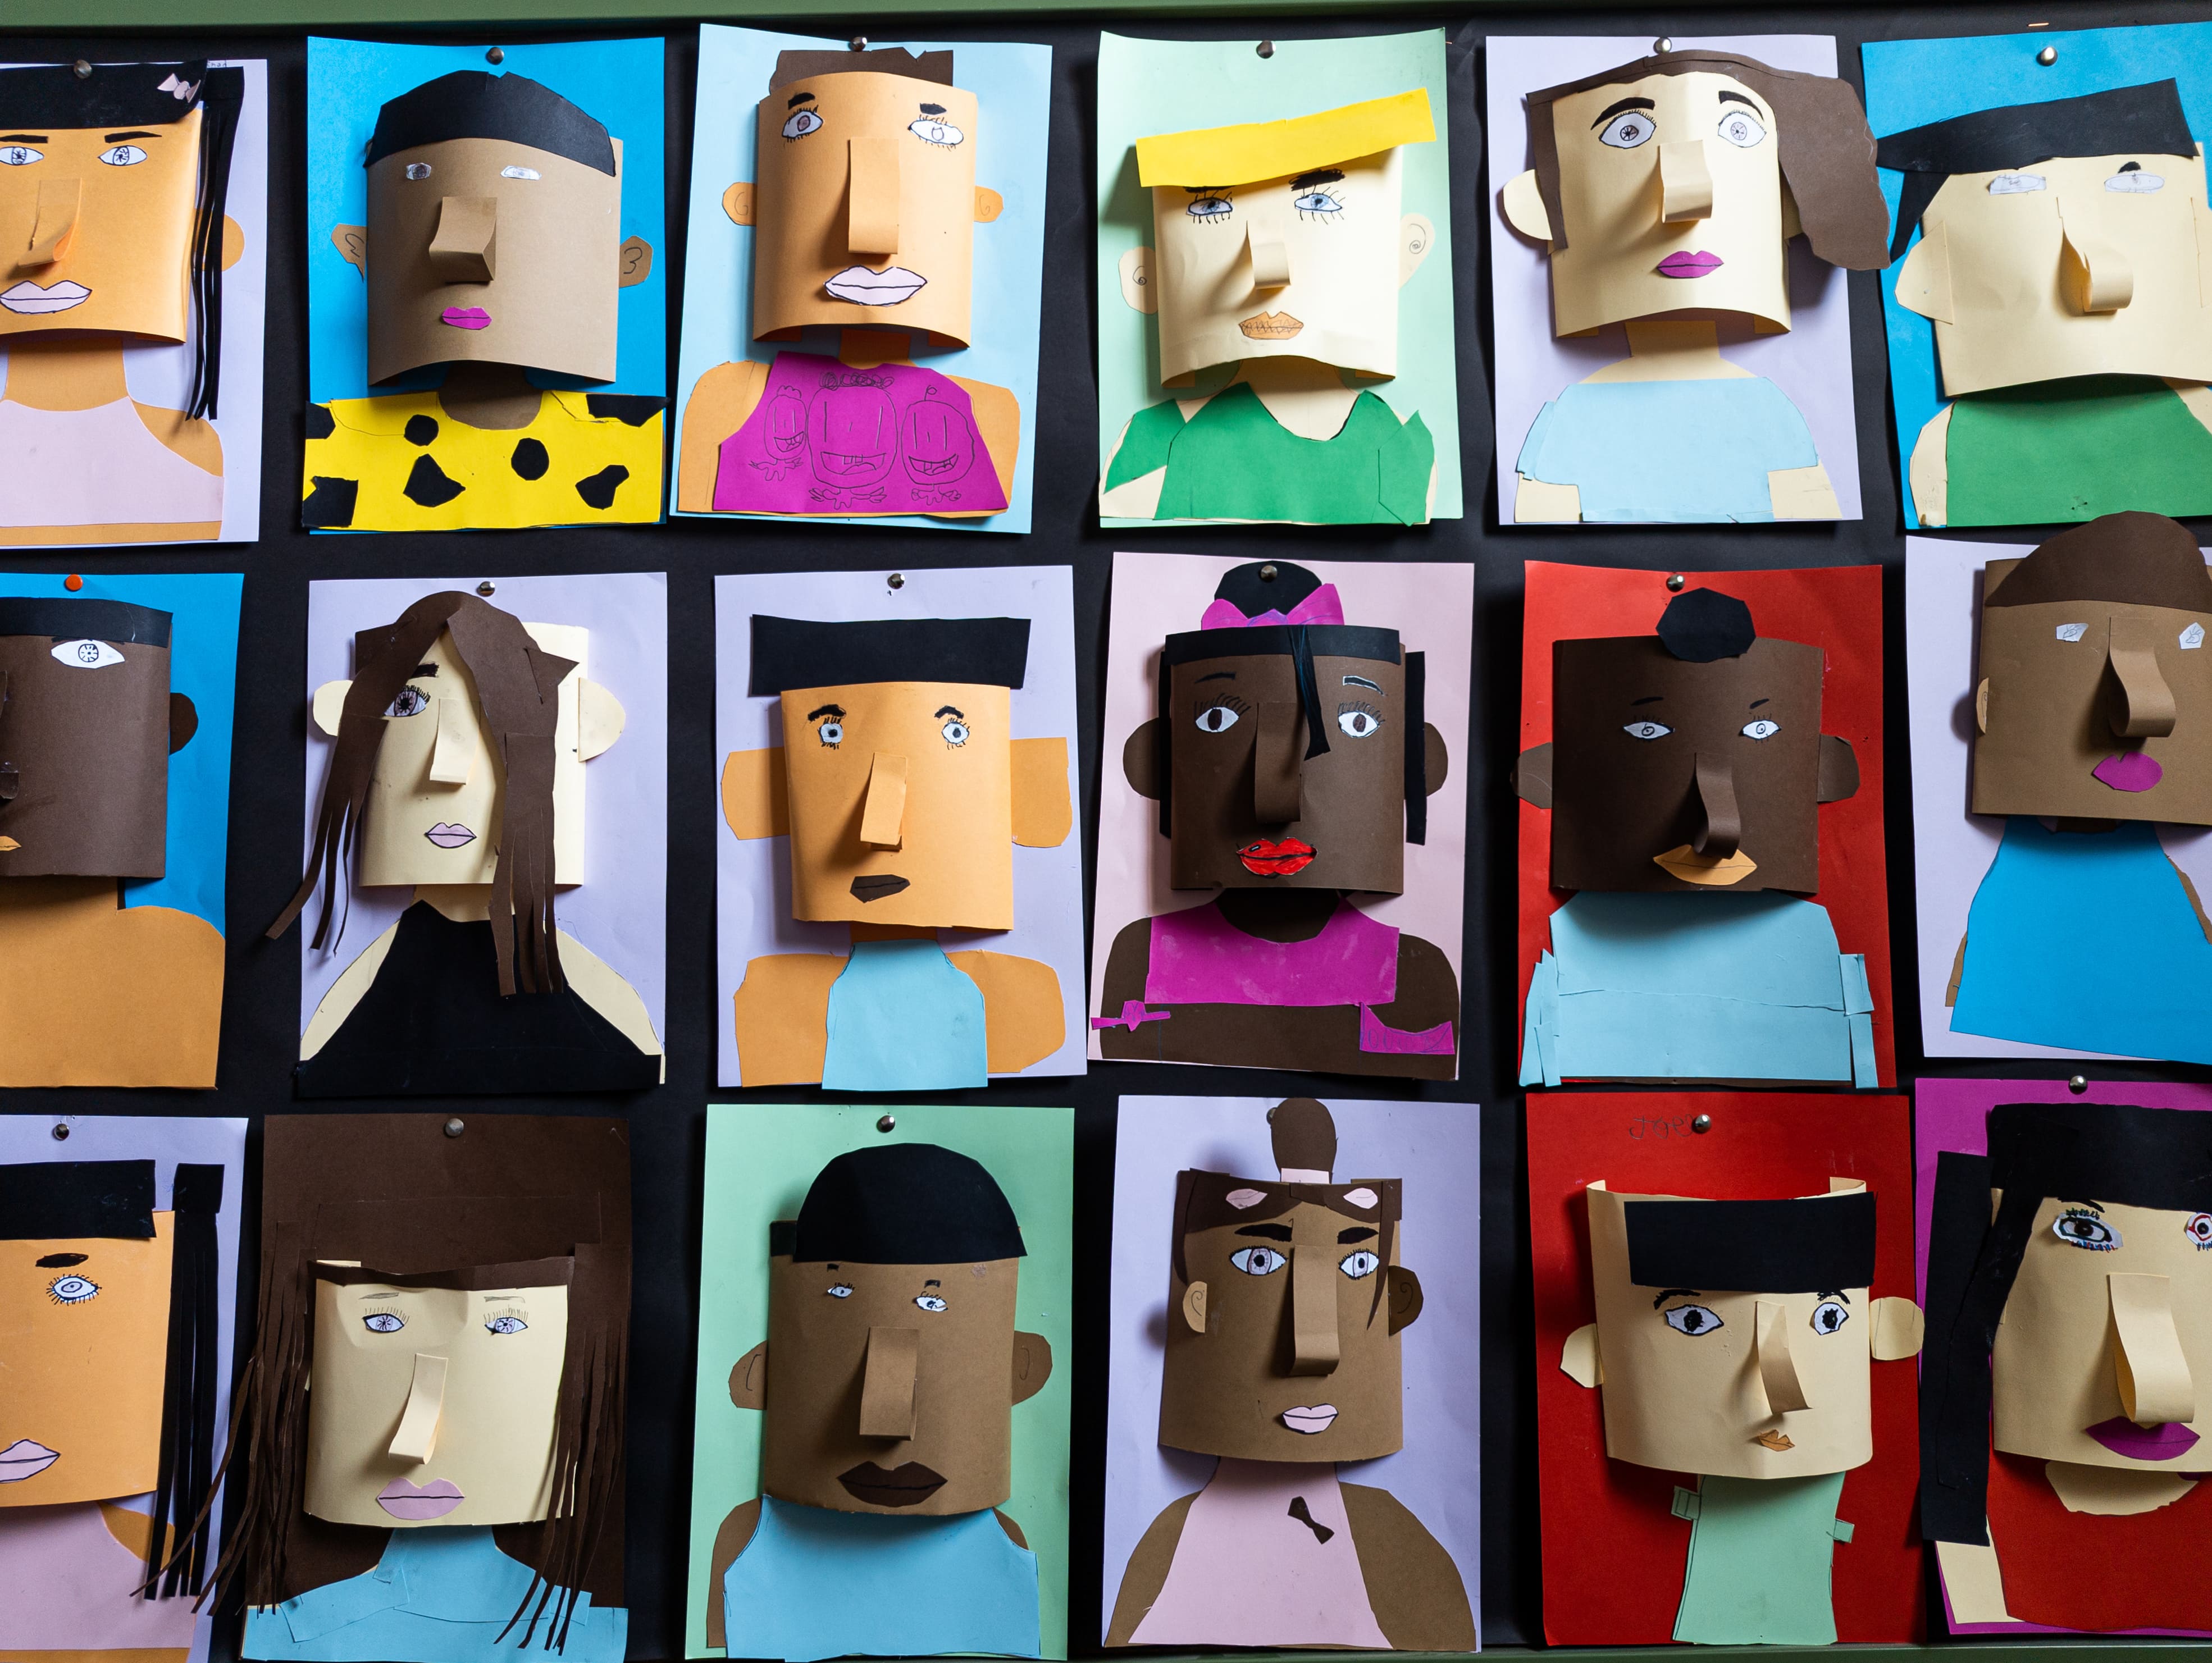 Gesichter aus Pappe gebastelt; unterschiedliche Kulturen und Hautfarben